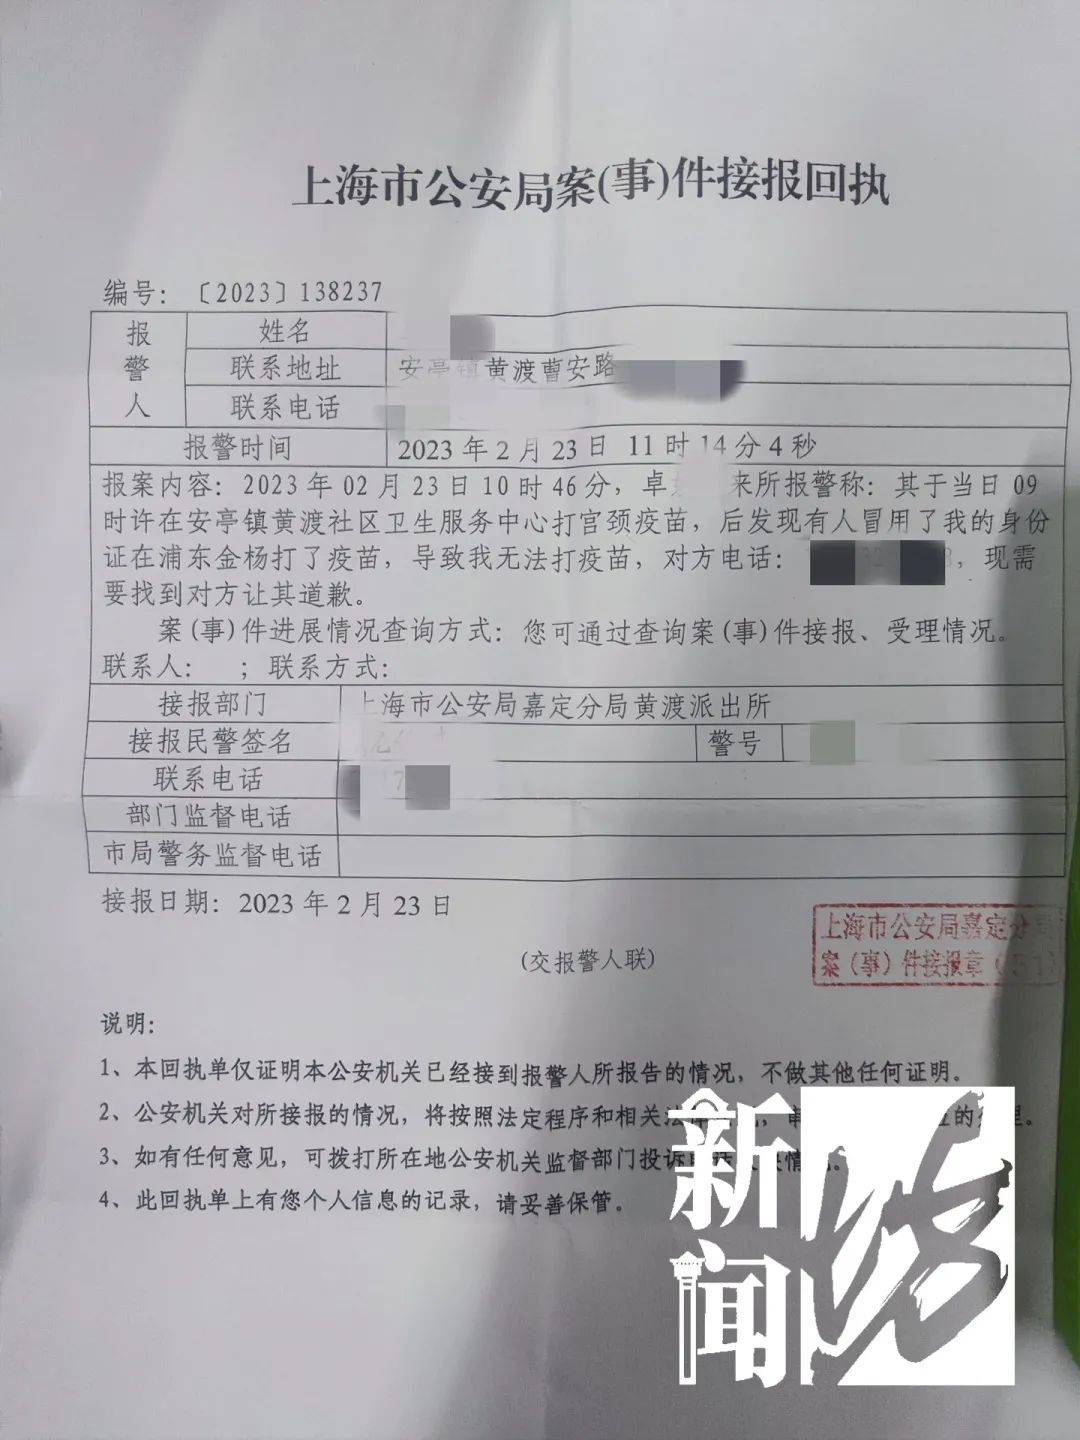 排了一年的队，上海女大学生被人冒名顶替打疫苗！“李鬼”没找到，手法也不清楚…警方已介入调查